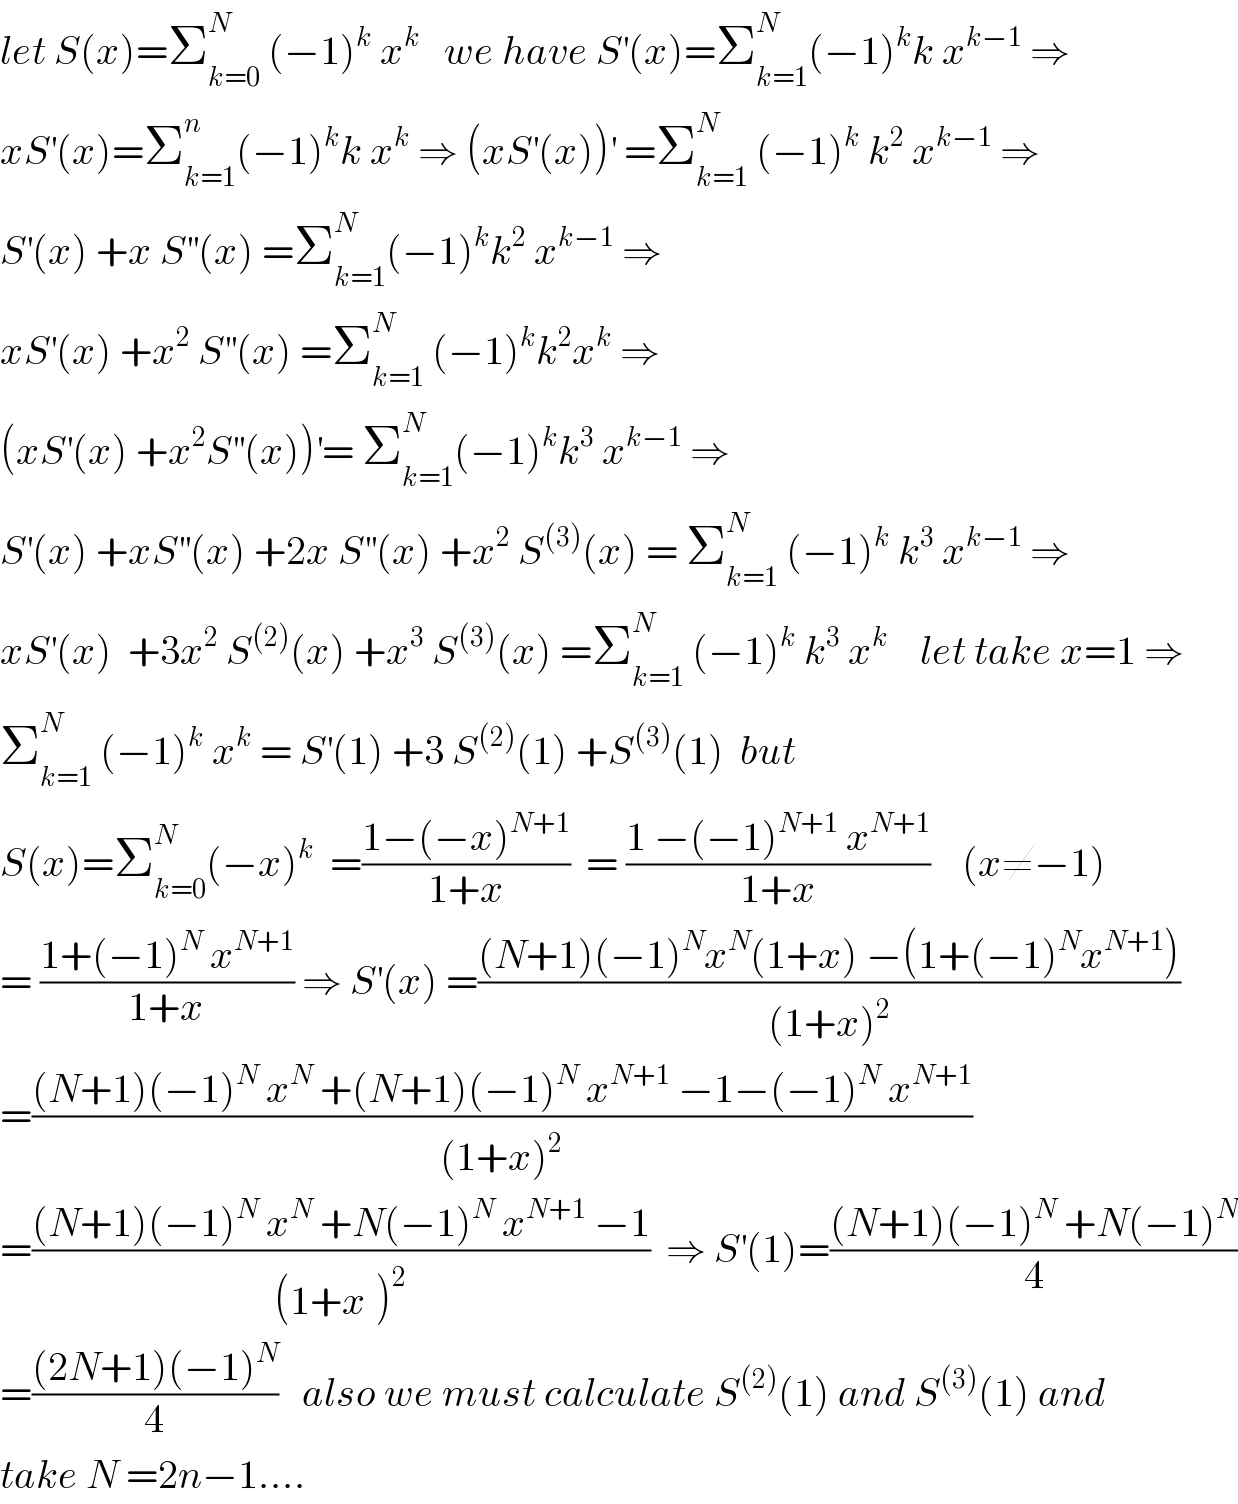 let S(x)=Σ_(k=0) ^N  (−1)^k  x^k    we have S^′ (x)=Σ_(k=1) ^N (−1)^k k x^(k−1)  ⇒  xS^′ (x)=Σ_(k=1) ^n (−1)^k k x^k  ⇒ (xS^′ (x))^′  =Σ_(k=1) ^N  (−1)^k  k^2  x^(k−1)  ⇒  S^′ (x) +x S^(′′) (x) =Σ_(k=1) ^N (−1)^k k^2  x^(k−1)  ⇒  xS^′ (x) +x^2  S^(′′) (x) =Σ_(k=1) ^N  (−1)^k k^2 x^k  ⇒  (xS^′ (x) +x^2 S^(′′) (x))^′ = Σ_(k=1) ^N (−1)^k k^3  x^(k−1)  ⇒  S^′ (x) +xS^(′′) (x) +2x S^(′′) (x) +x^2  S^((3)) (x) = Σ_(k=1) ^N  (−1)^k  k^3  x^(k−1)  ⇒  xS^′ (x)  +3x^2  S^((2)) (x) +x^3  S^((3)) (x) =Σ_(k=1) ^N  (−1)^k  k^3  x^(k  )    let take x=1 ⇒  Σ_(k=1) ^N  (−1)^k  x^k  = S^′ (1) +3 S^((2)) (1) +S^((3)) (1)  but  S(x)=Σ_(k=0) ^N (−x)^k   =((1−(−x)^(N+1) )/(1+x))  = ((1 −(−1)^(N+1)  x^(N+1) )/(1+x))    (x≠−1)  = ((1+(−1)^N  x^(N+1) )/(1+x)) ⇒ S^′ (x) =(((N+1)(−1)^N x^N (1+x) −(1+(−1)^N x^(N+1) ))/((1+x)^2 ))  =(((N+1)(−1)^N  x^N  +(N+1)(−1)^N  x^(N+1)  −1−(−1)^N  x^(N+1) )/((1+x)^2 ))  =(((N+1)(−1)^N  x^N  +N(−1)^N  x^(N+1)  −1)/((1+x^ )^2 ))  ⇒ S^′ (1)=(((N+1)(−1)^N  +N(−1)^N )/4)  =(((2N+1)(−1)^N )/4)   also we must calculate S^((2)) (1) and S^((3)) (1) and  take N =2n−1....  